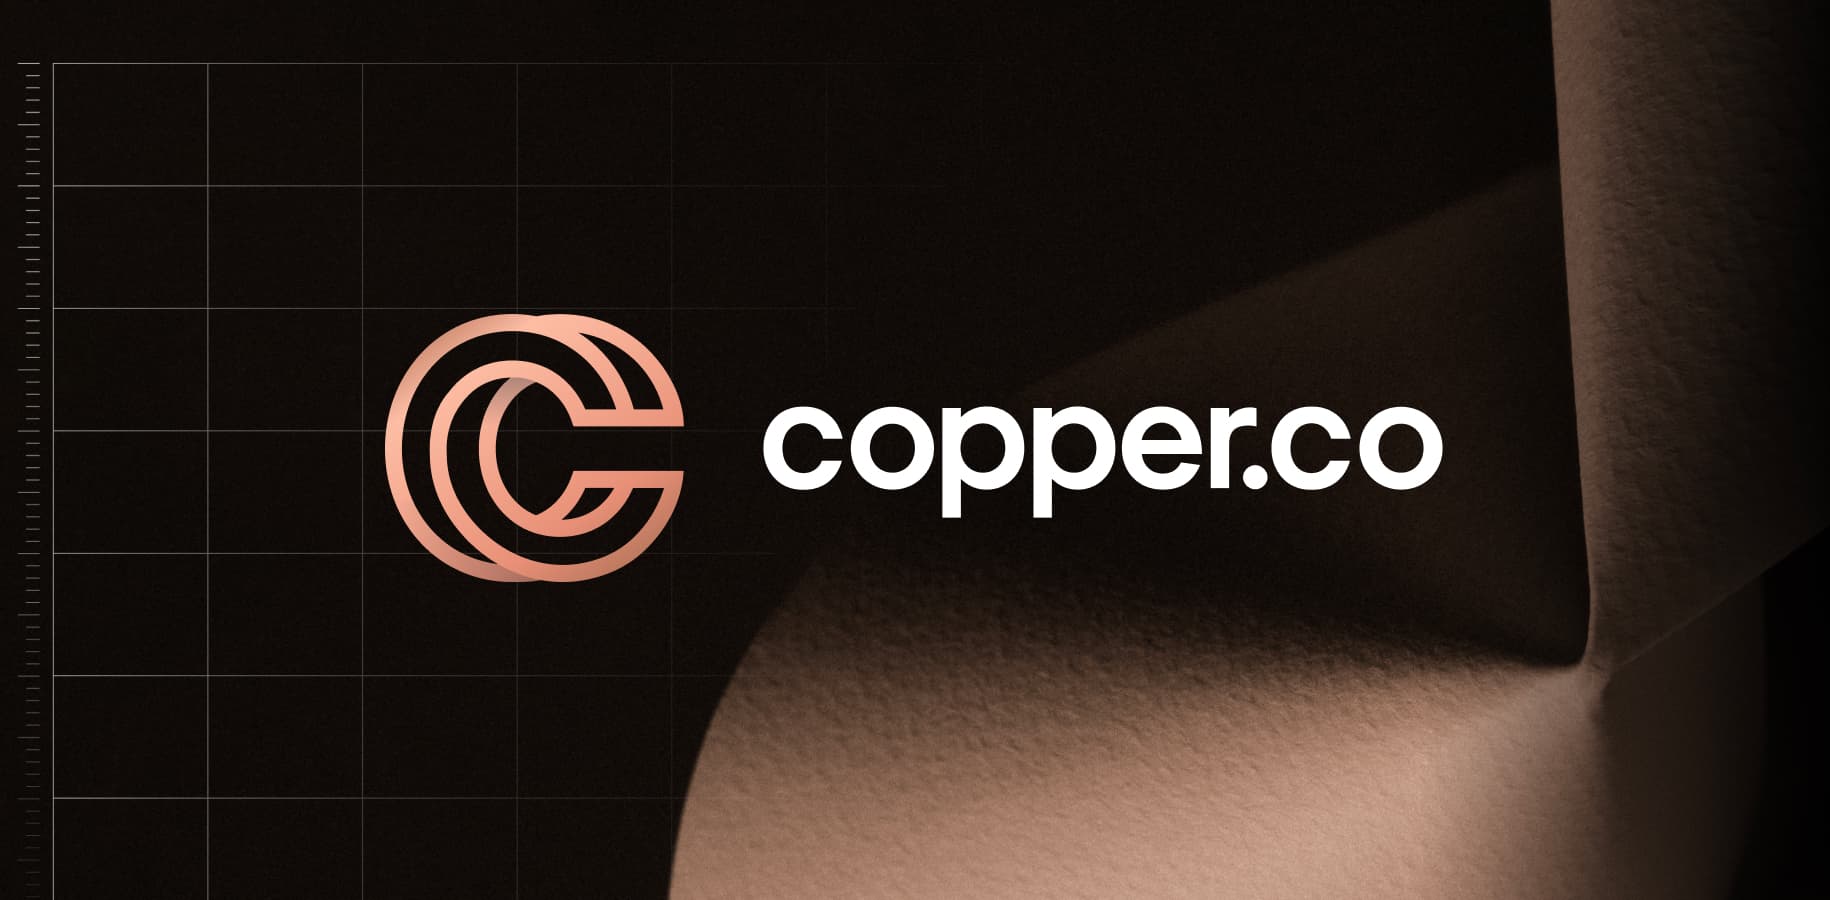 Copper.co image